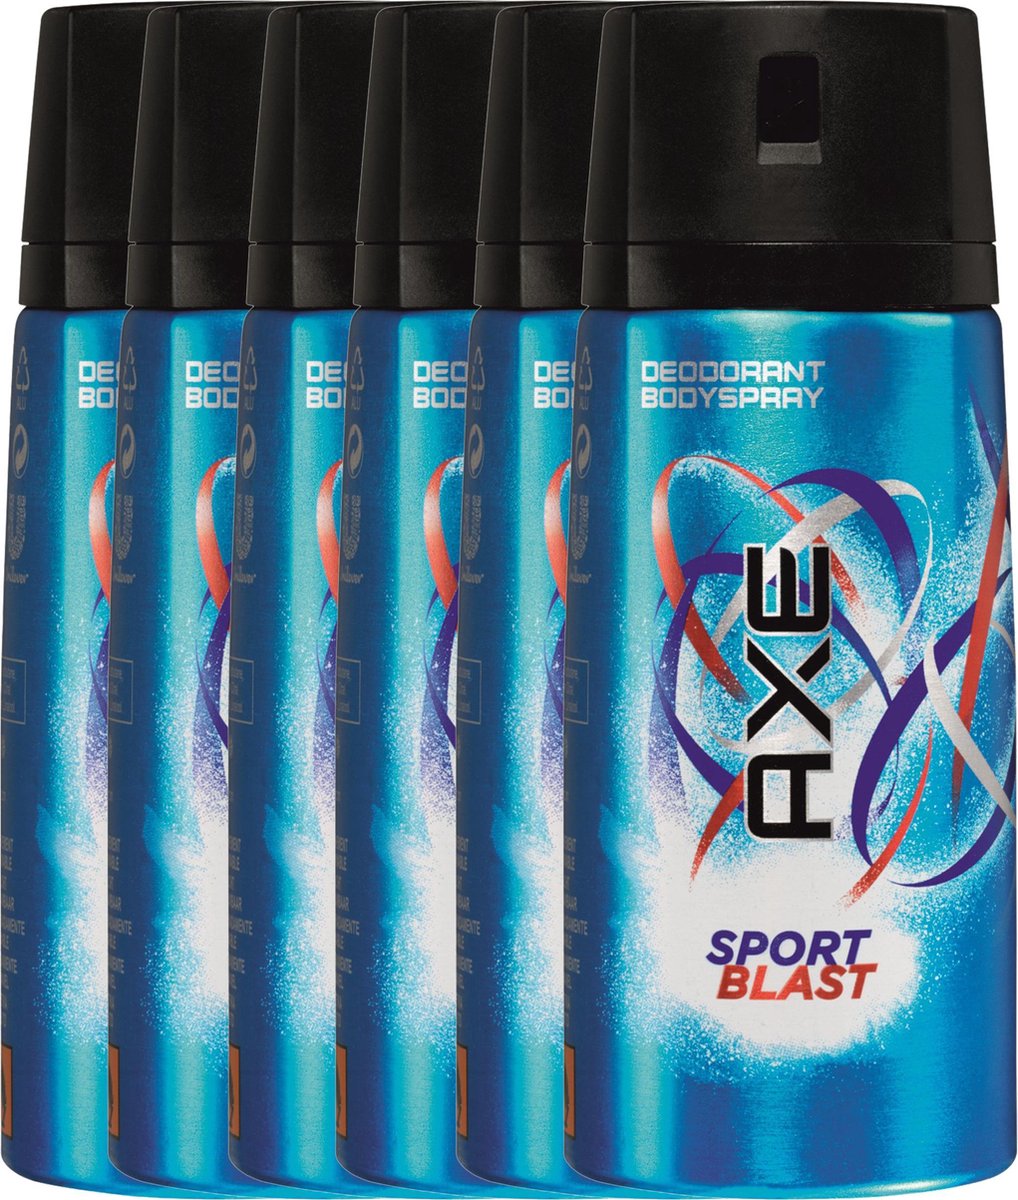 Axe sport blast Body Spray - 150 ml - deodorant - 6 st - Voordeelverpakking  | bol.com